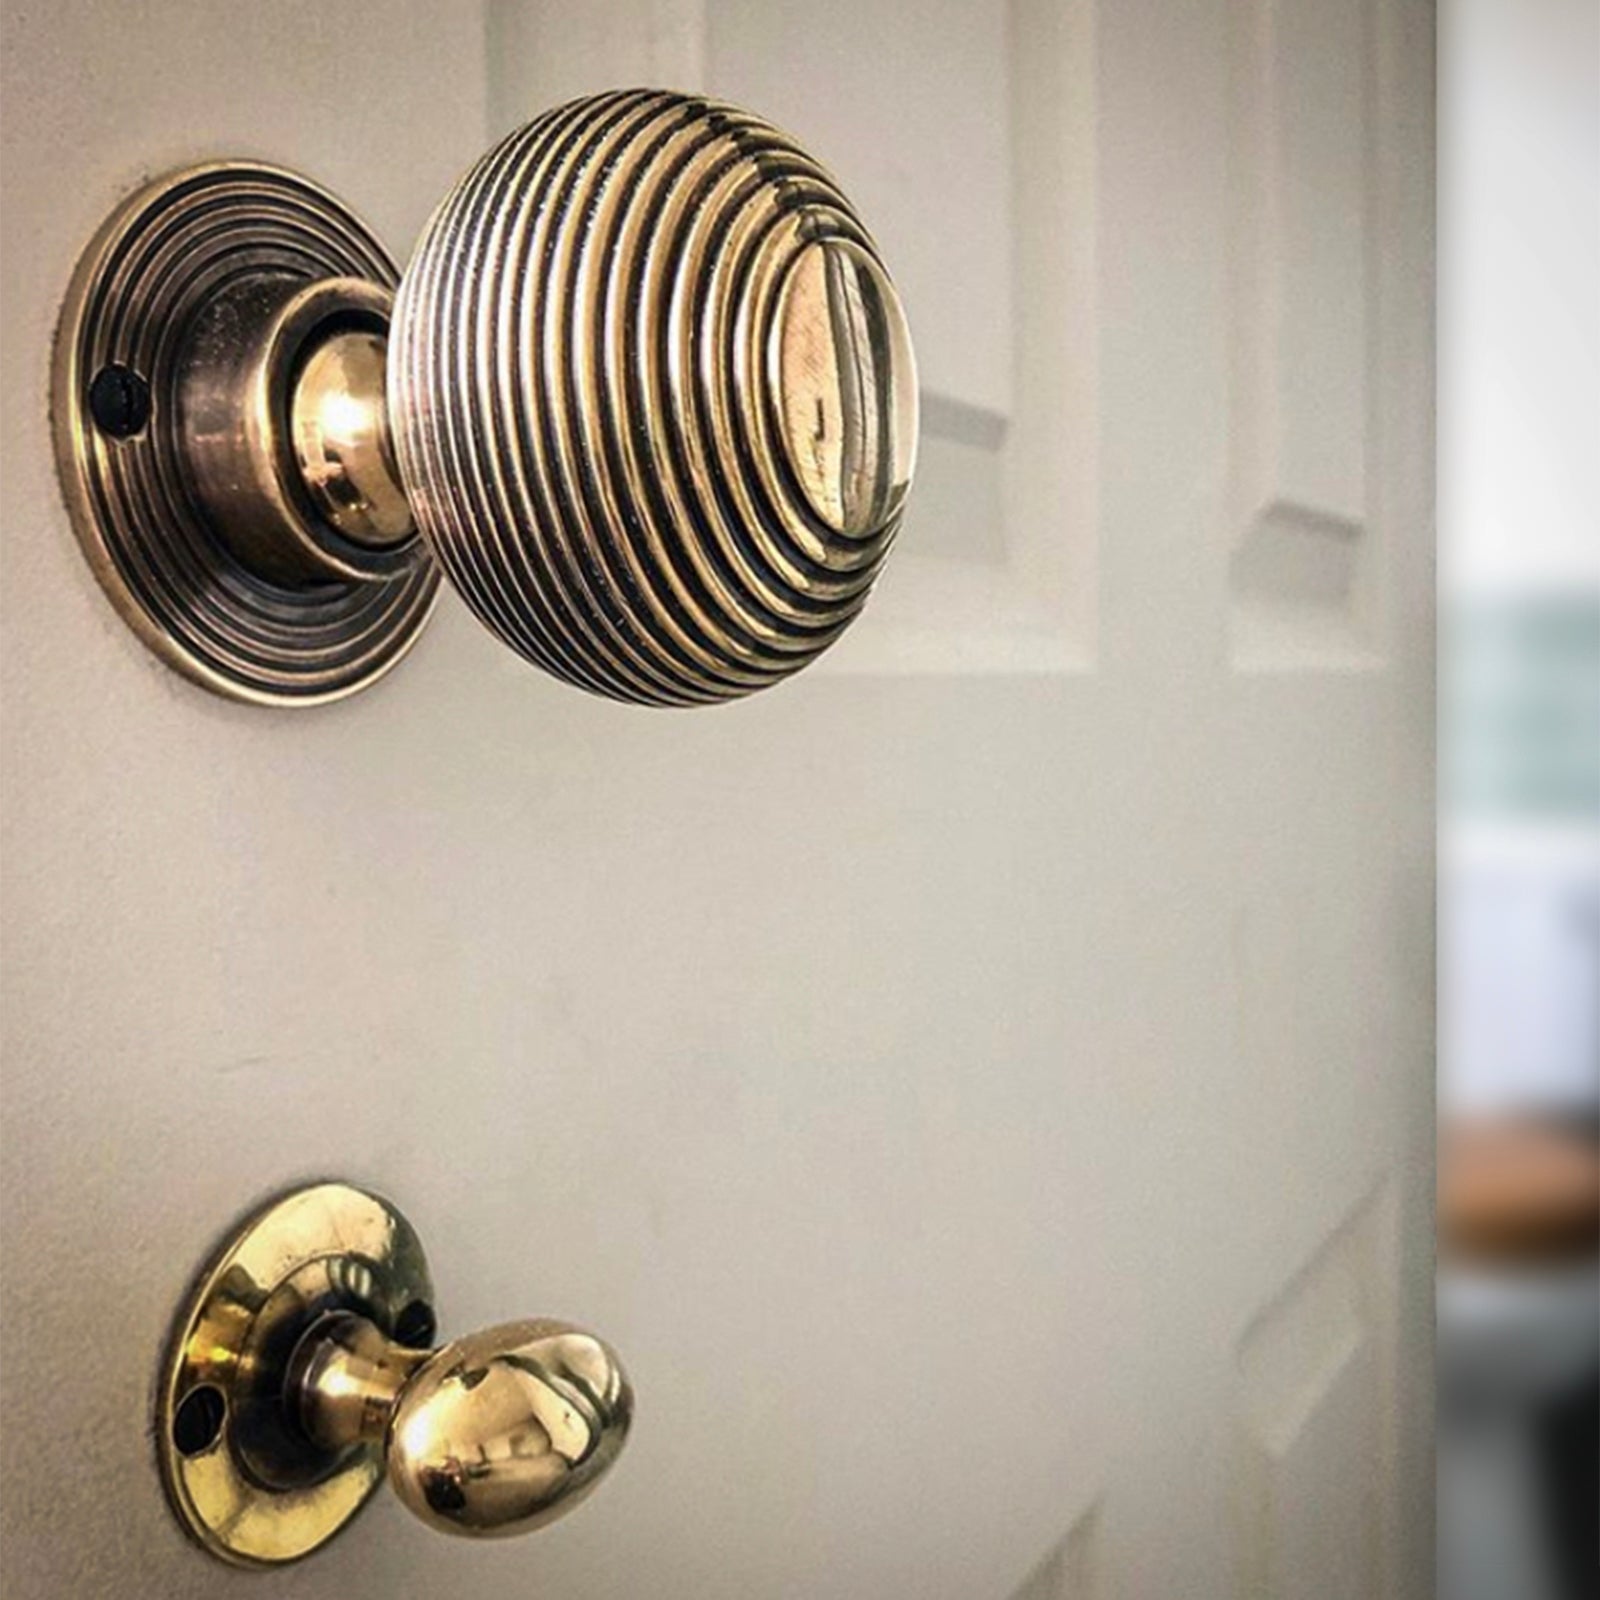 Bathroom door lock with door knob SHOW